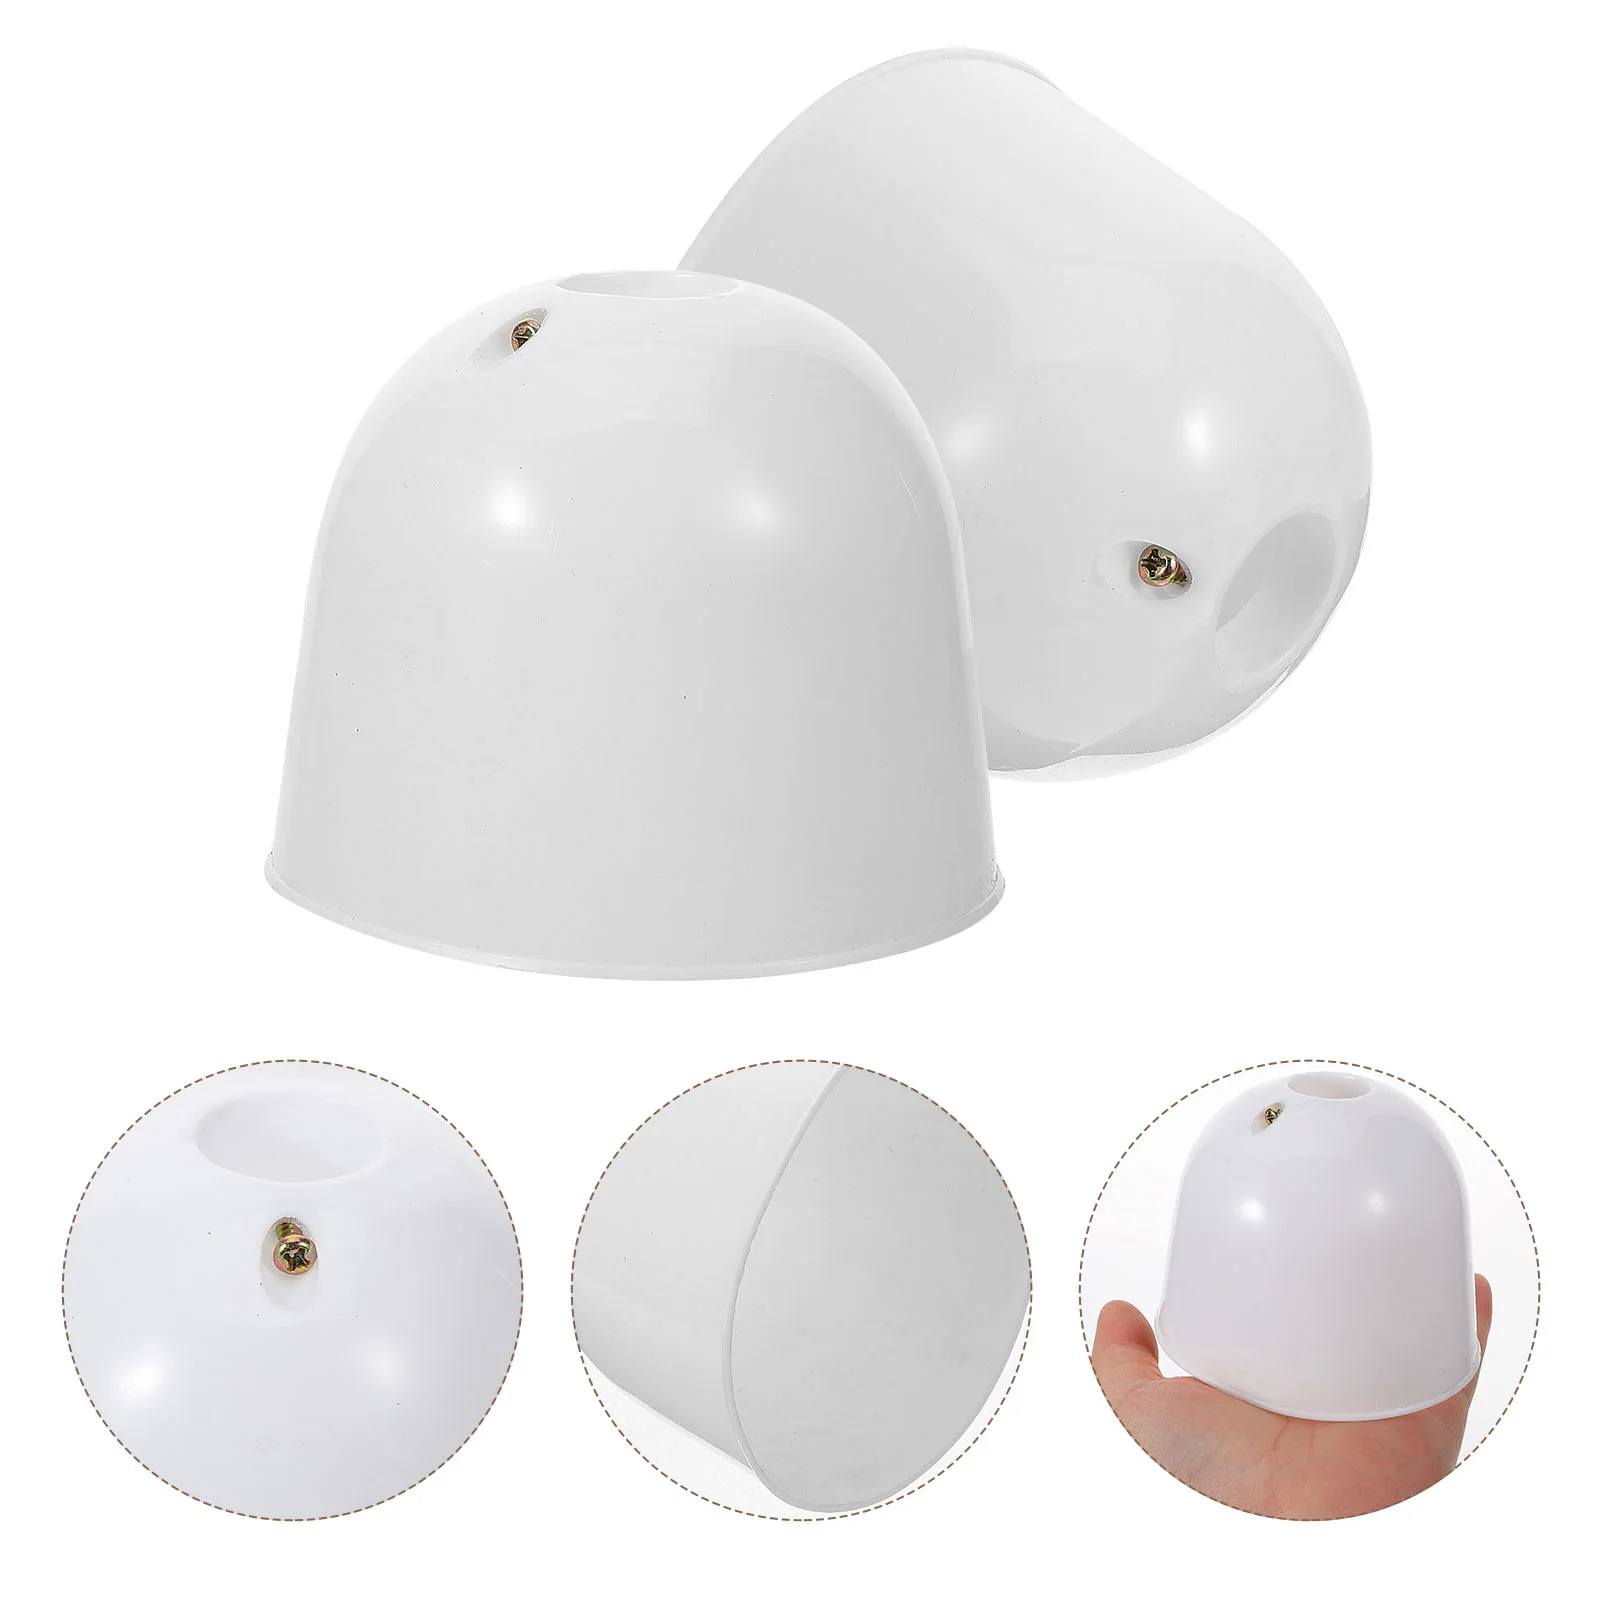 

2 Pcs Ceiling Fan Dust Cover Parts for Pendant Supplies White Decor Accessories